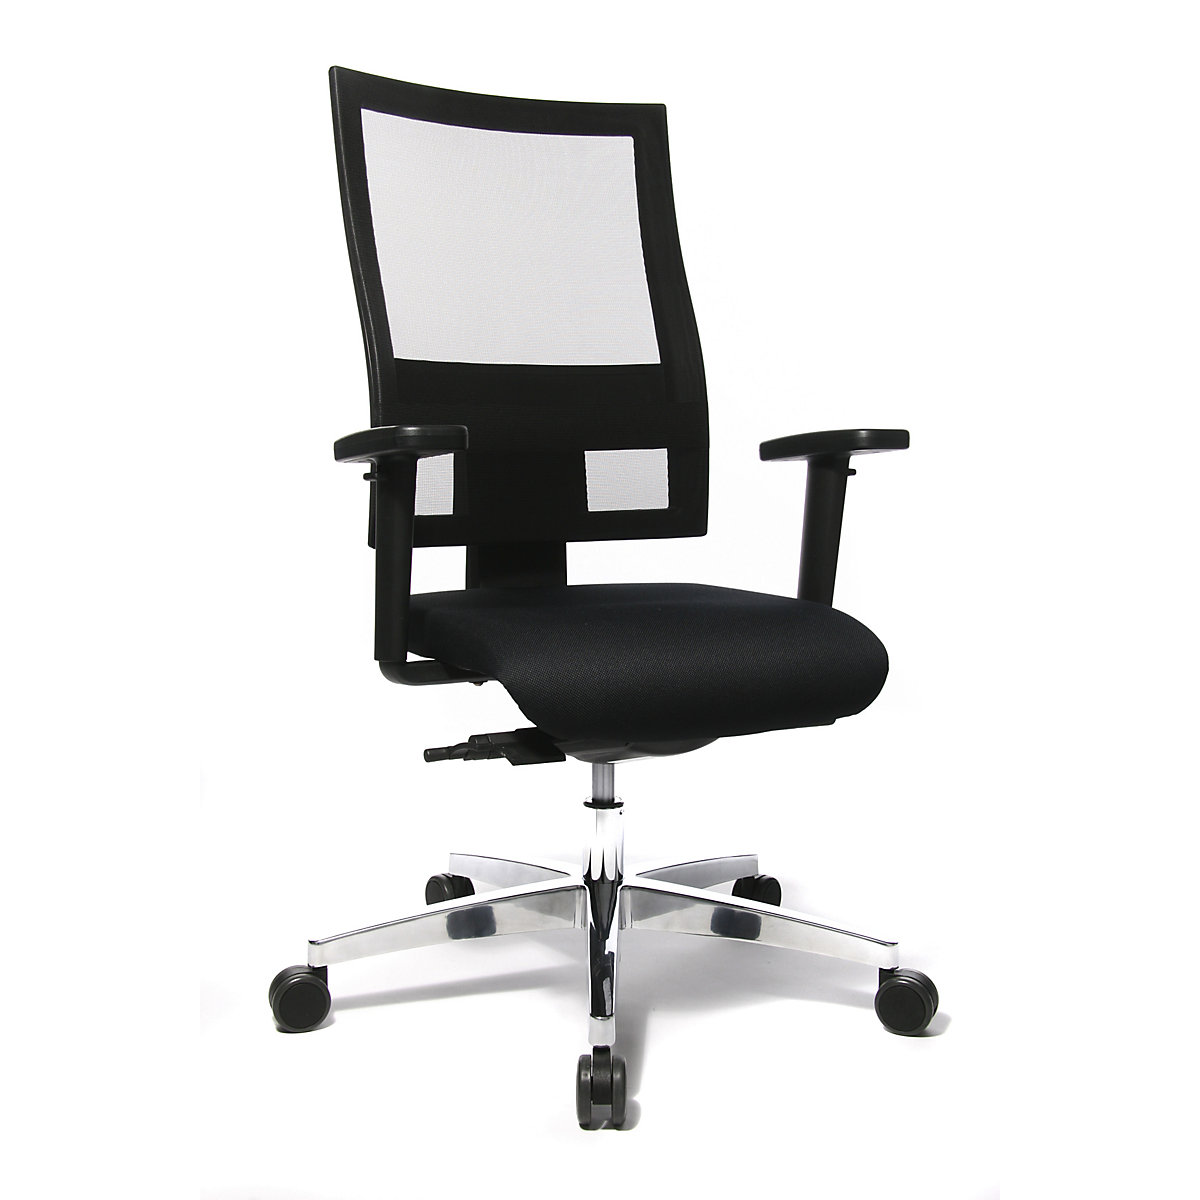 Sedia girevole da ufficio SITNESS 60 – Topstar, con schienale traspirante, braccioli inclusi, nero / nero-4